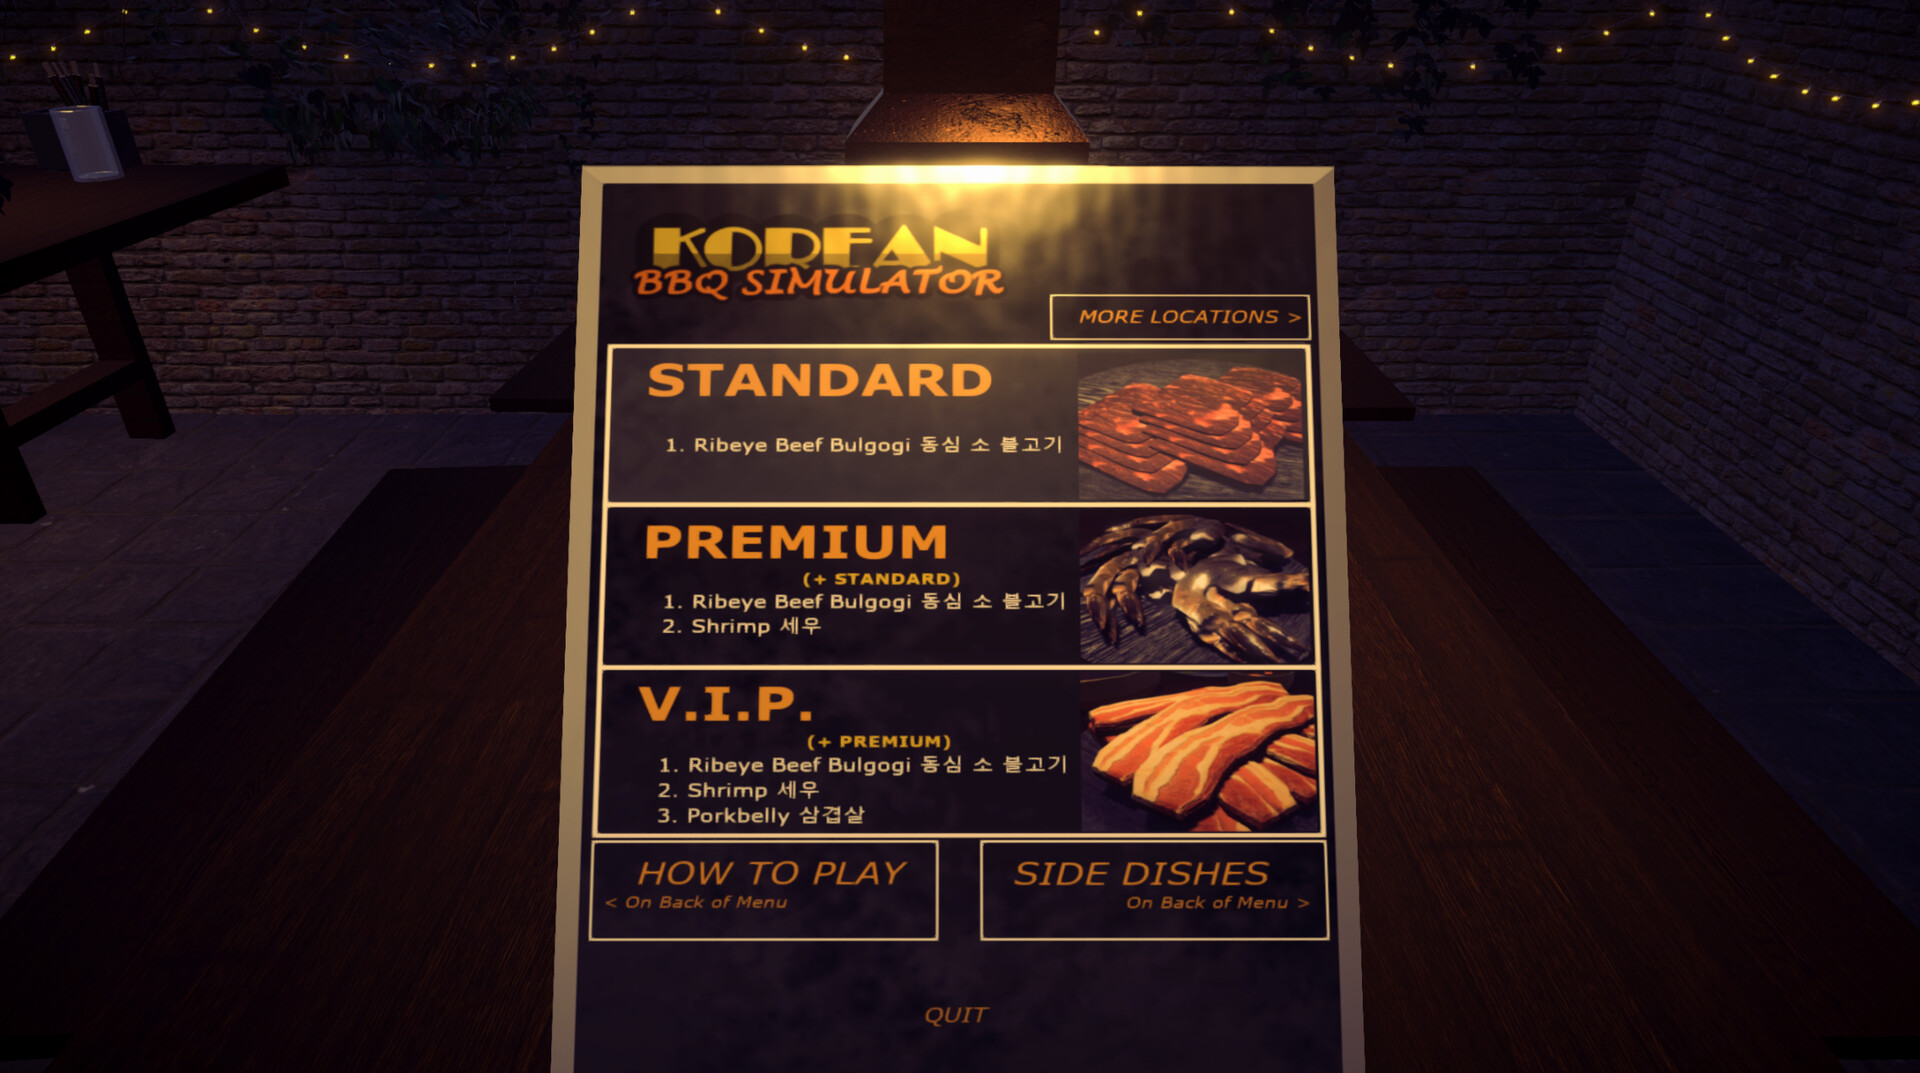 [$ 4.42] Korean BBQ Simulator Steam CD Key